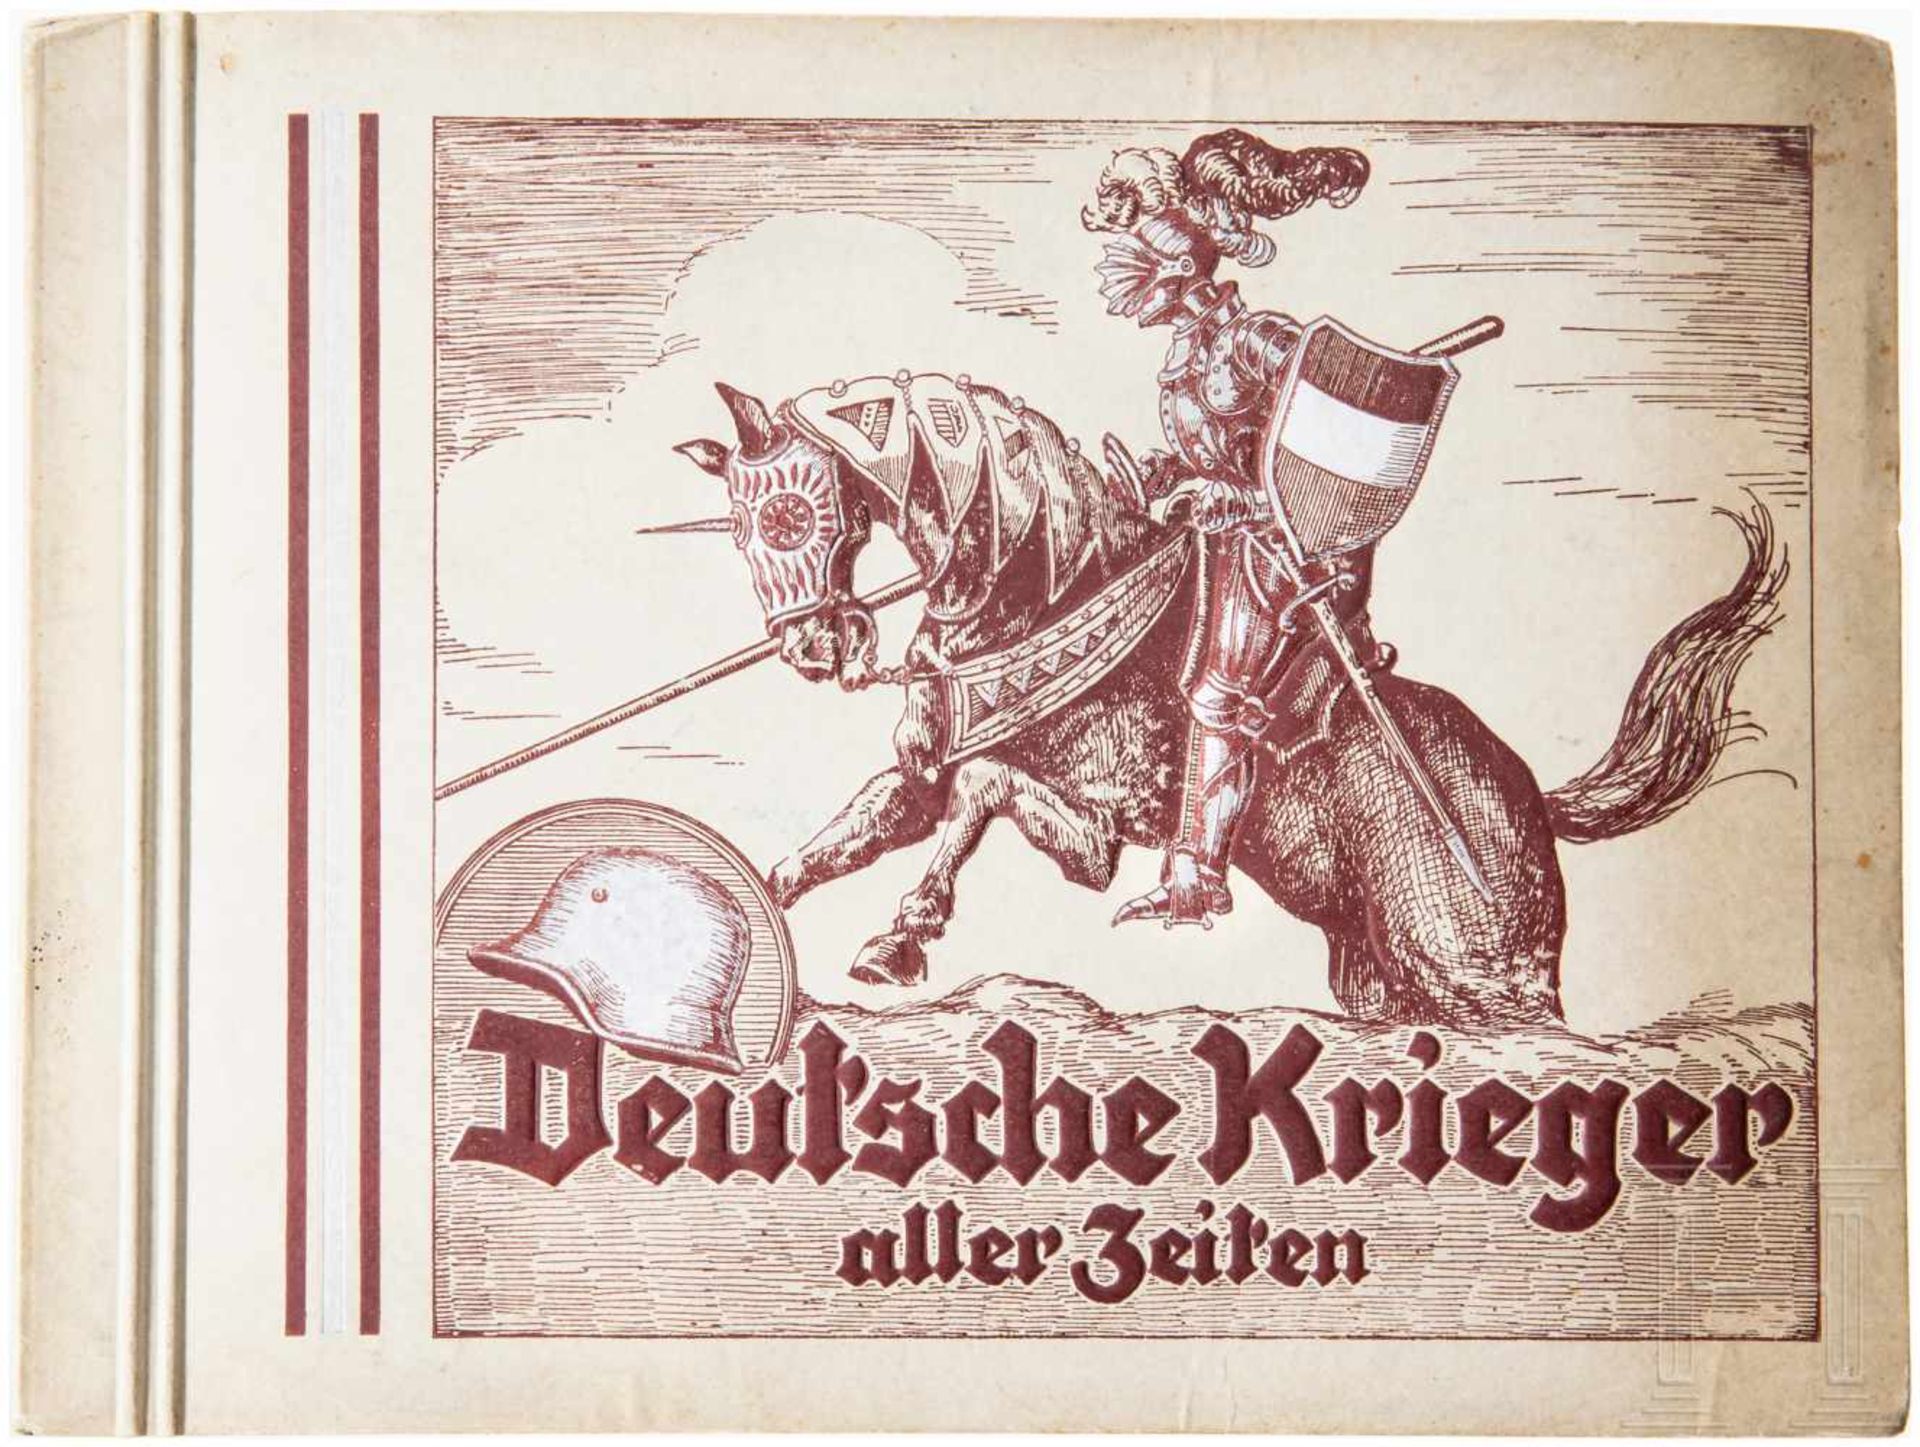 Zigarettenbildalbum "Deutsche Krieger aller Zeiten"Grauer Einband mit geprägtem Ritter und silbernen